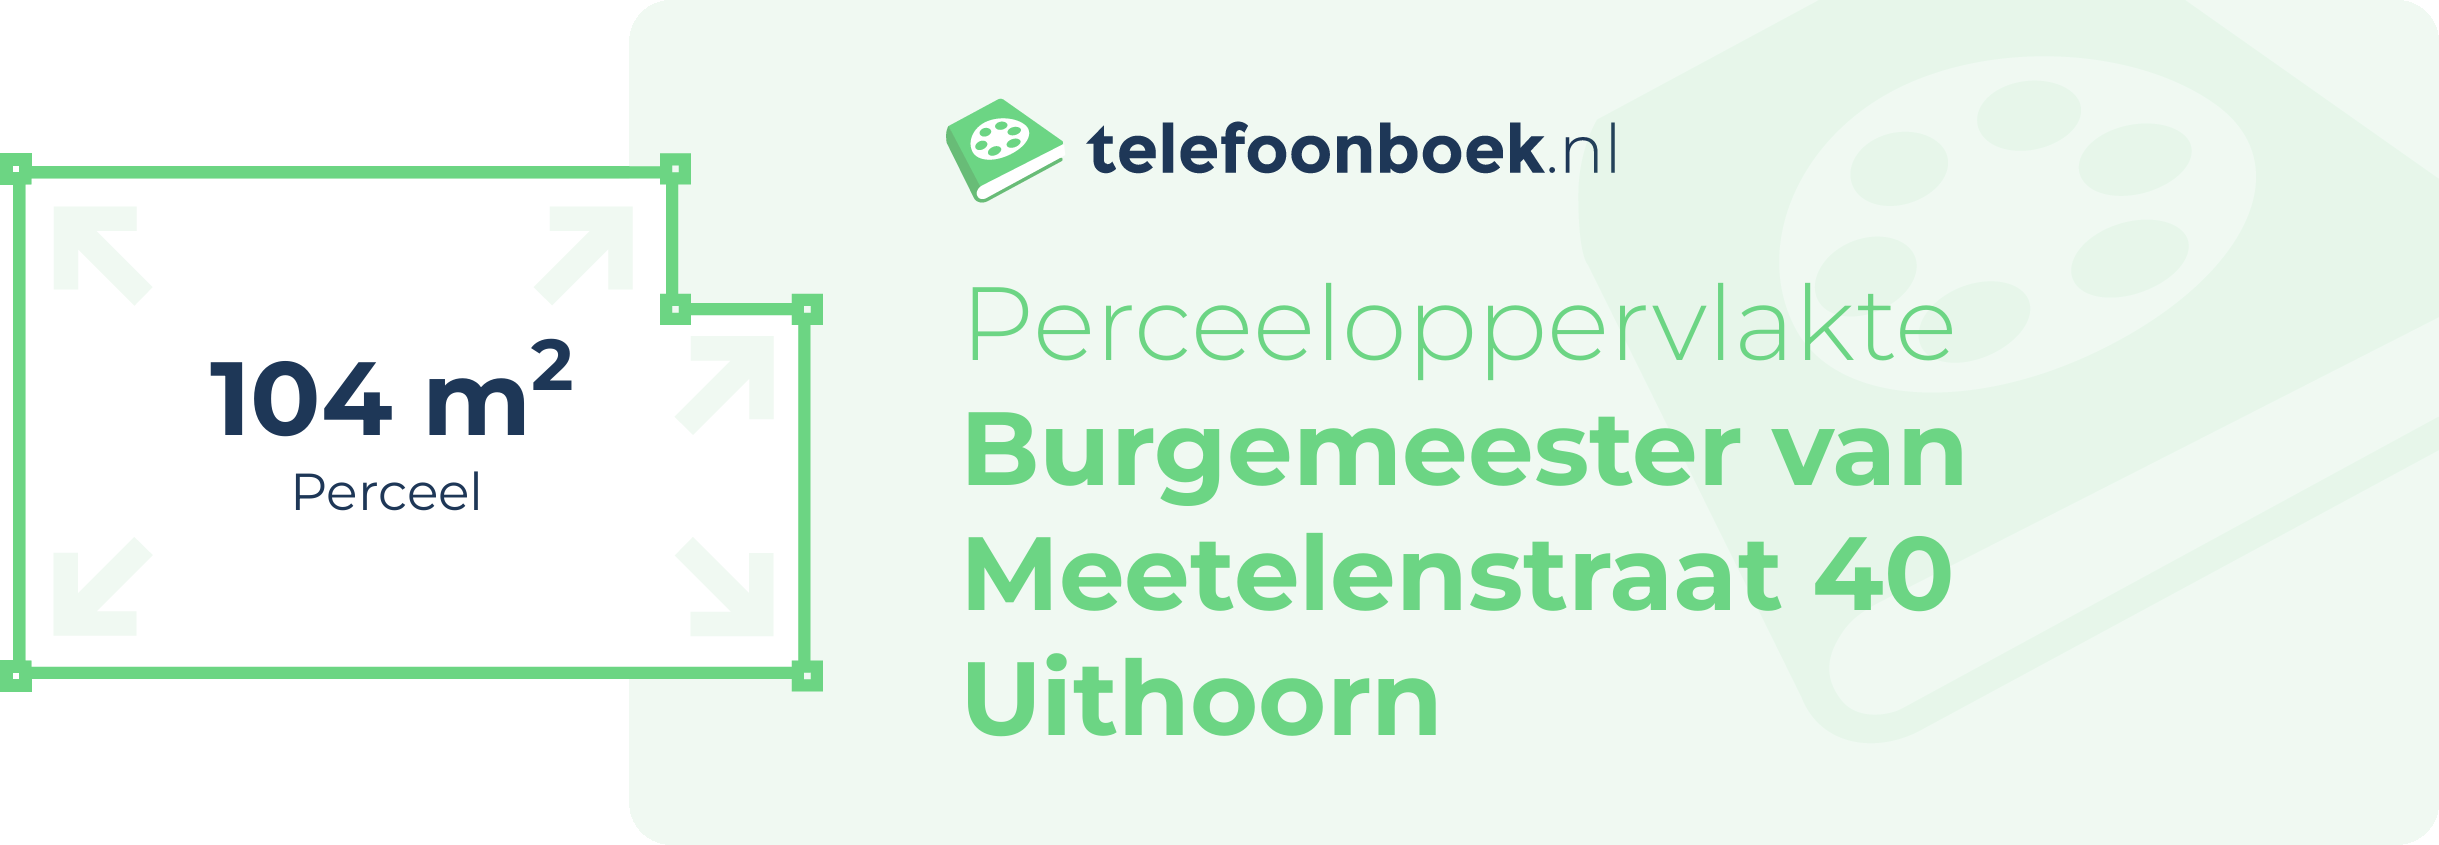 Perceeloppervlakte Burgemeester Van Meetelenstraat 40 Uithoorn